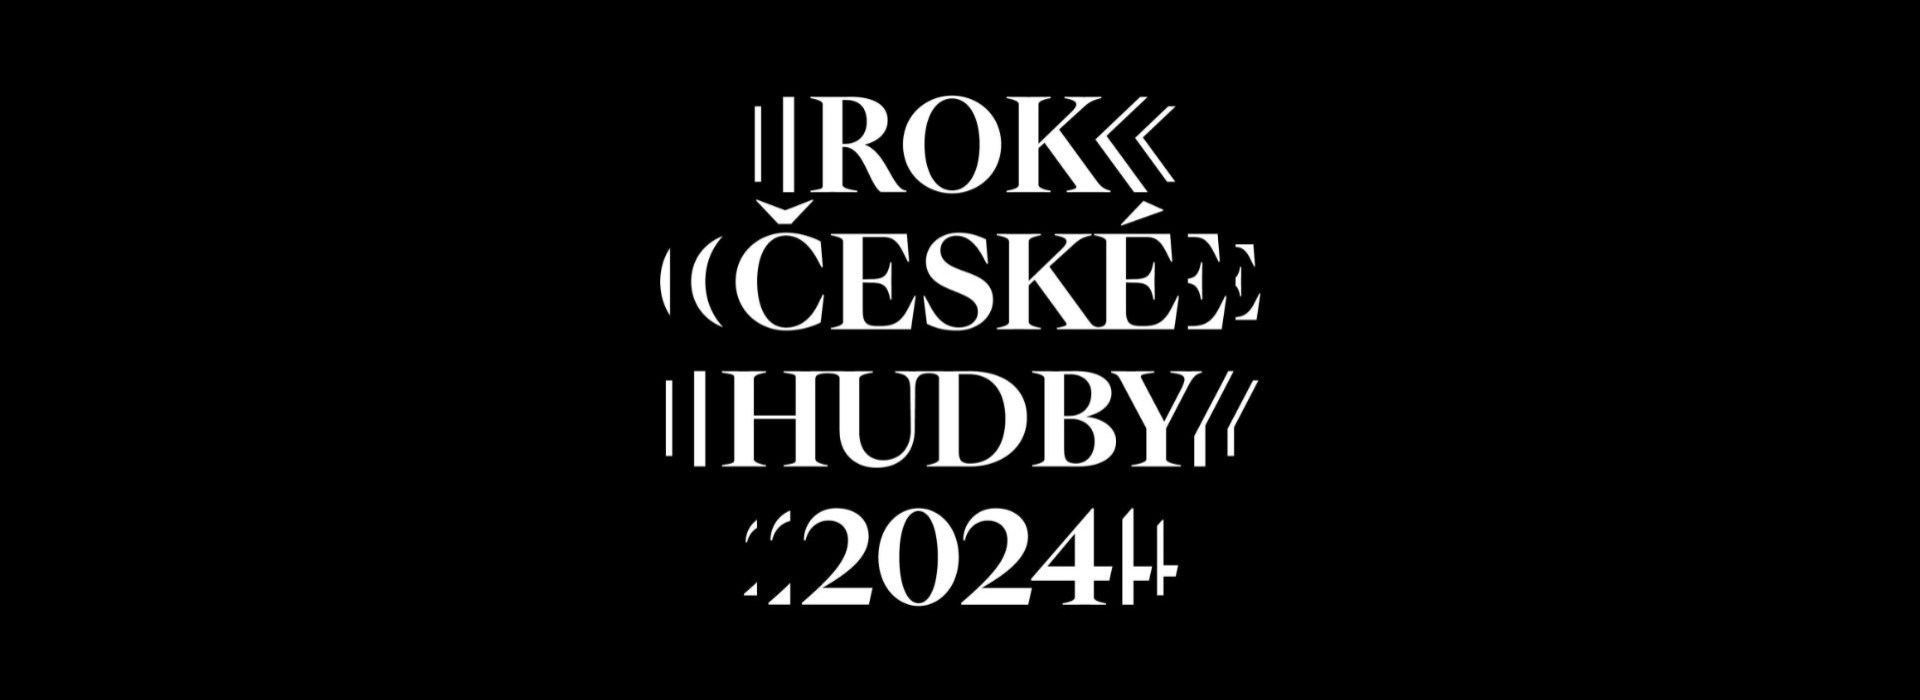 "Rok české hudby", czyli o trwającym Roku Muzyki Czeskiej